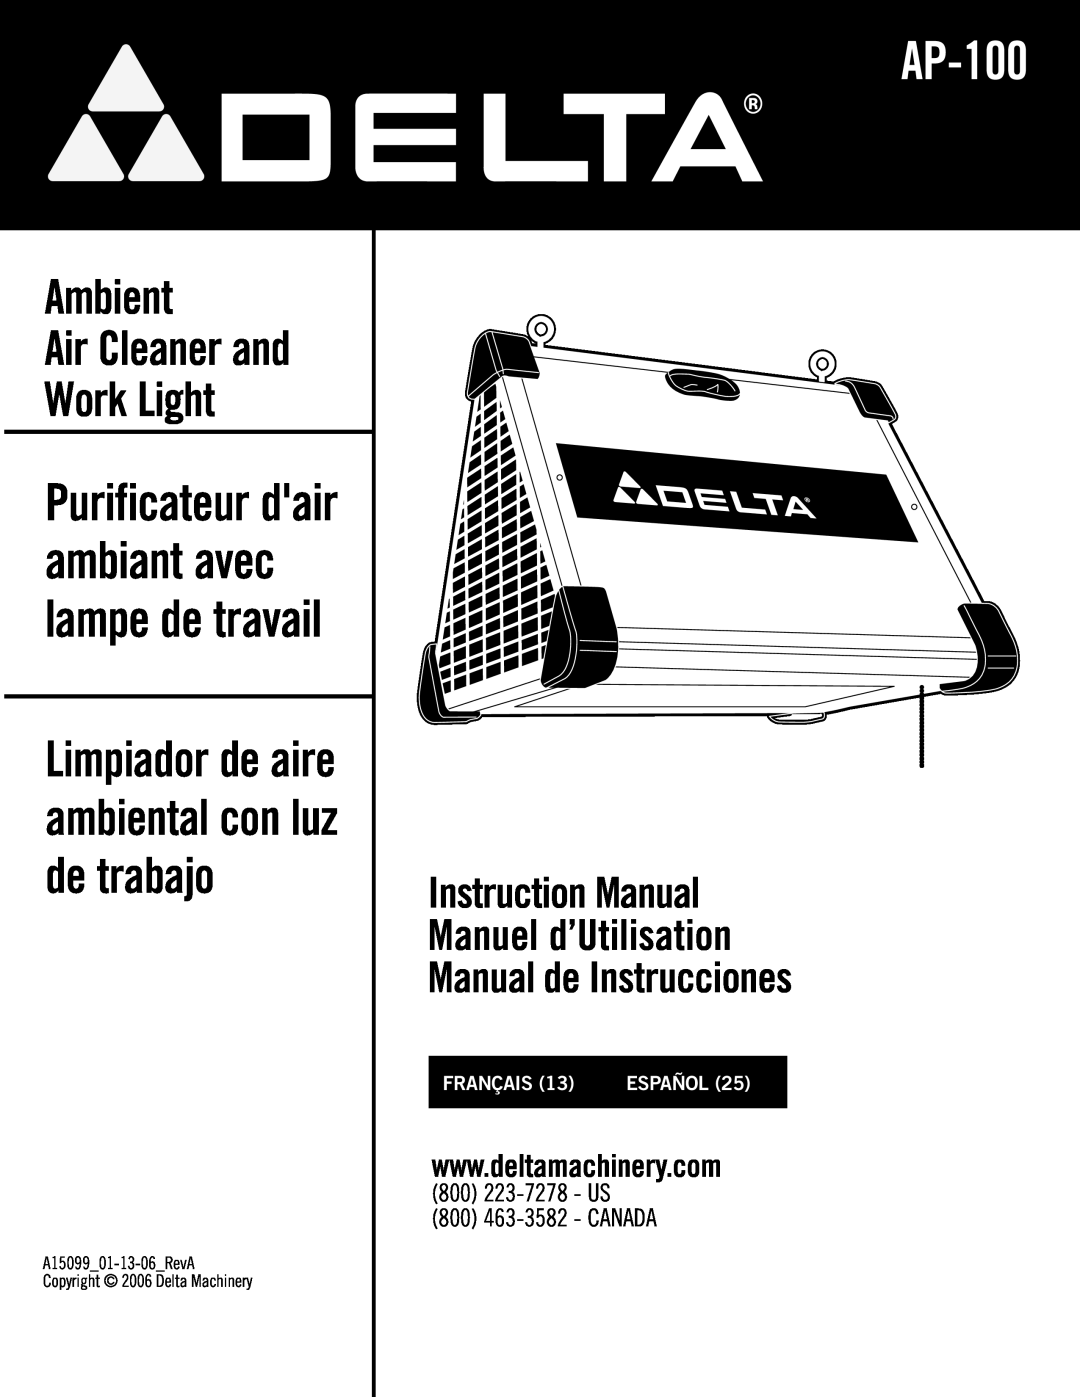 Delta AP-100 instruction manual Contractors Saw, Ambient Air Cleaner and Work Light, Manual de Instrucciones, Français 